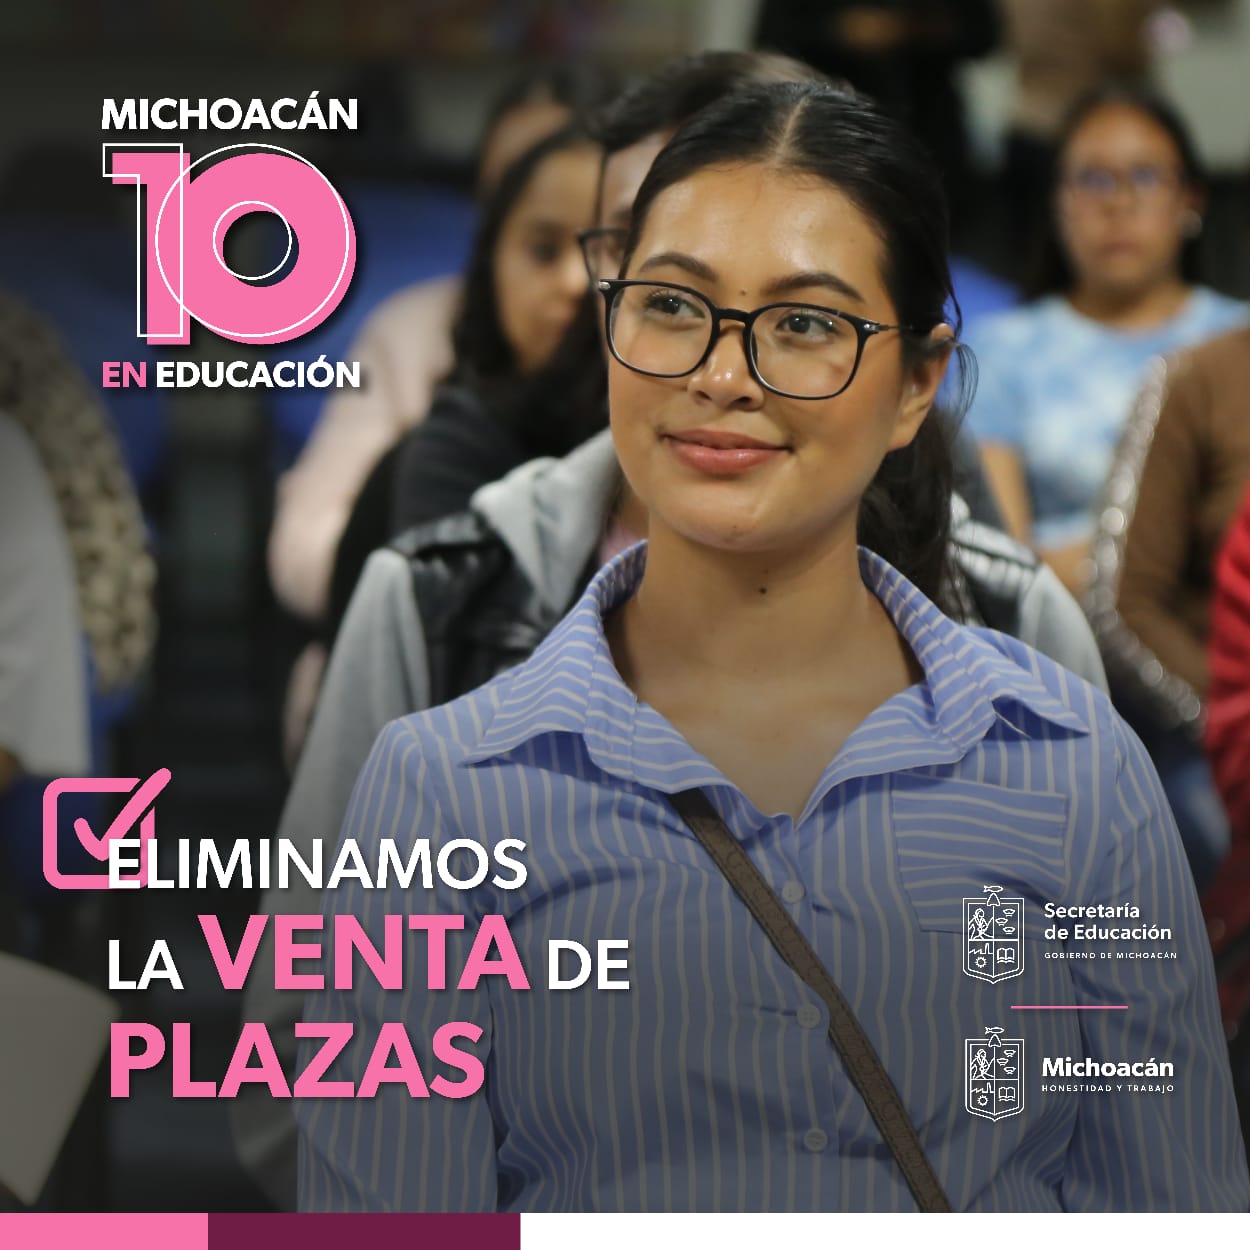 Bedolla puso fin a venta de plazas en Michoacán